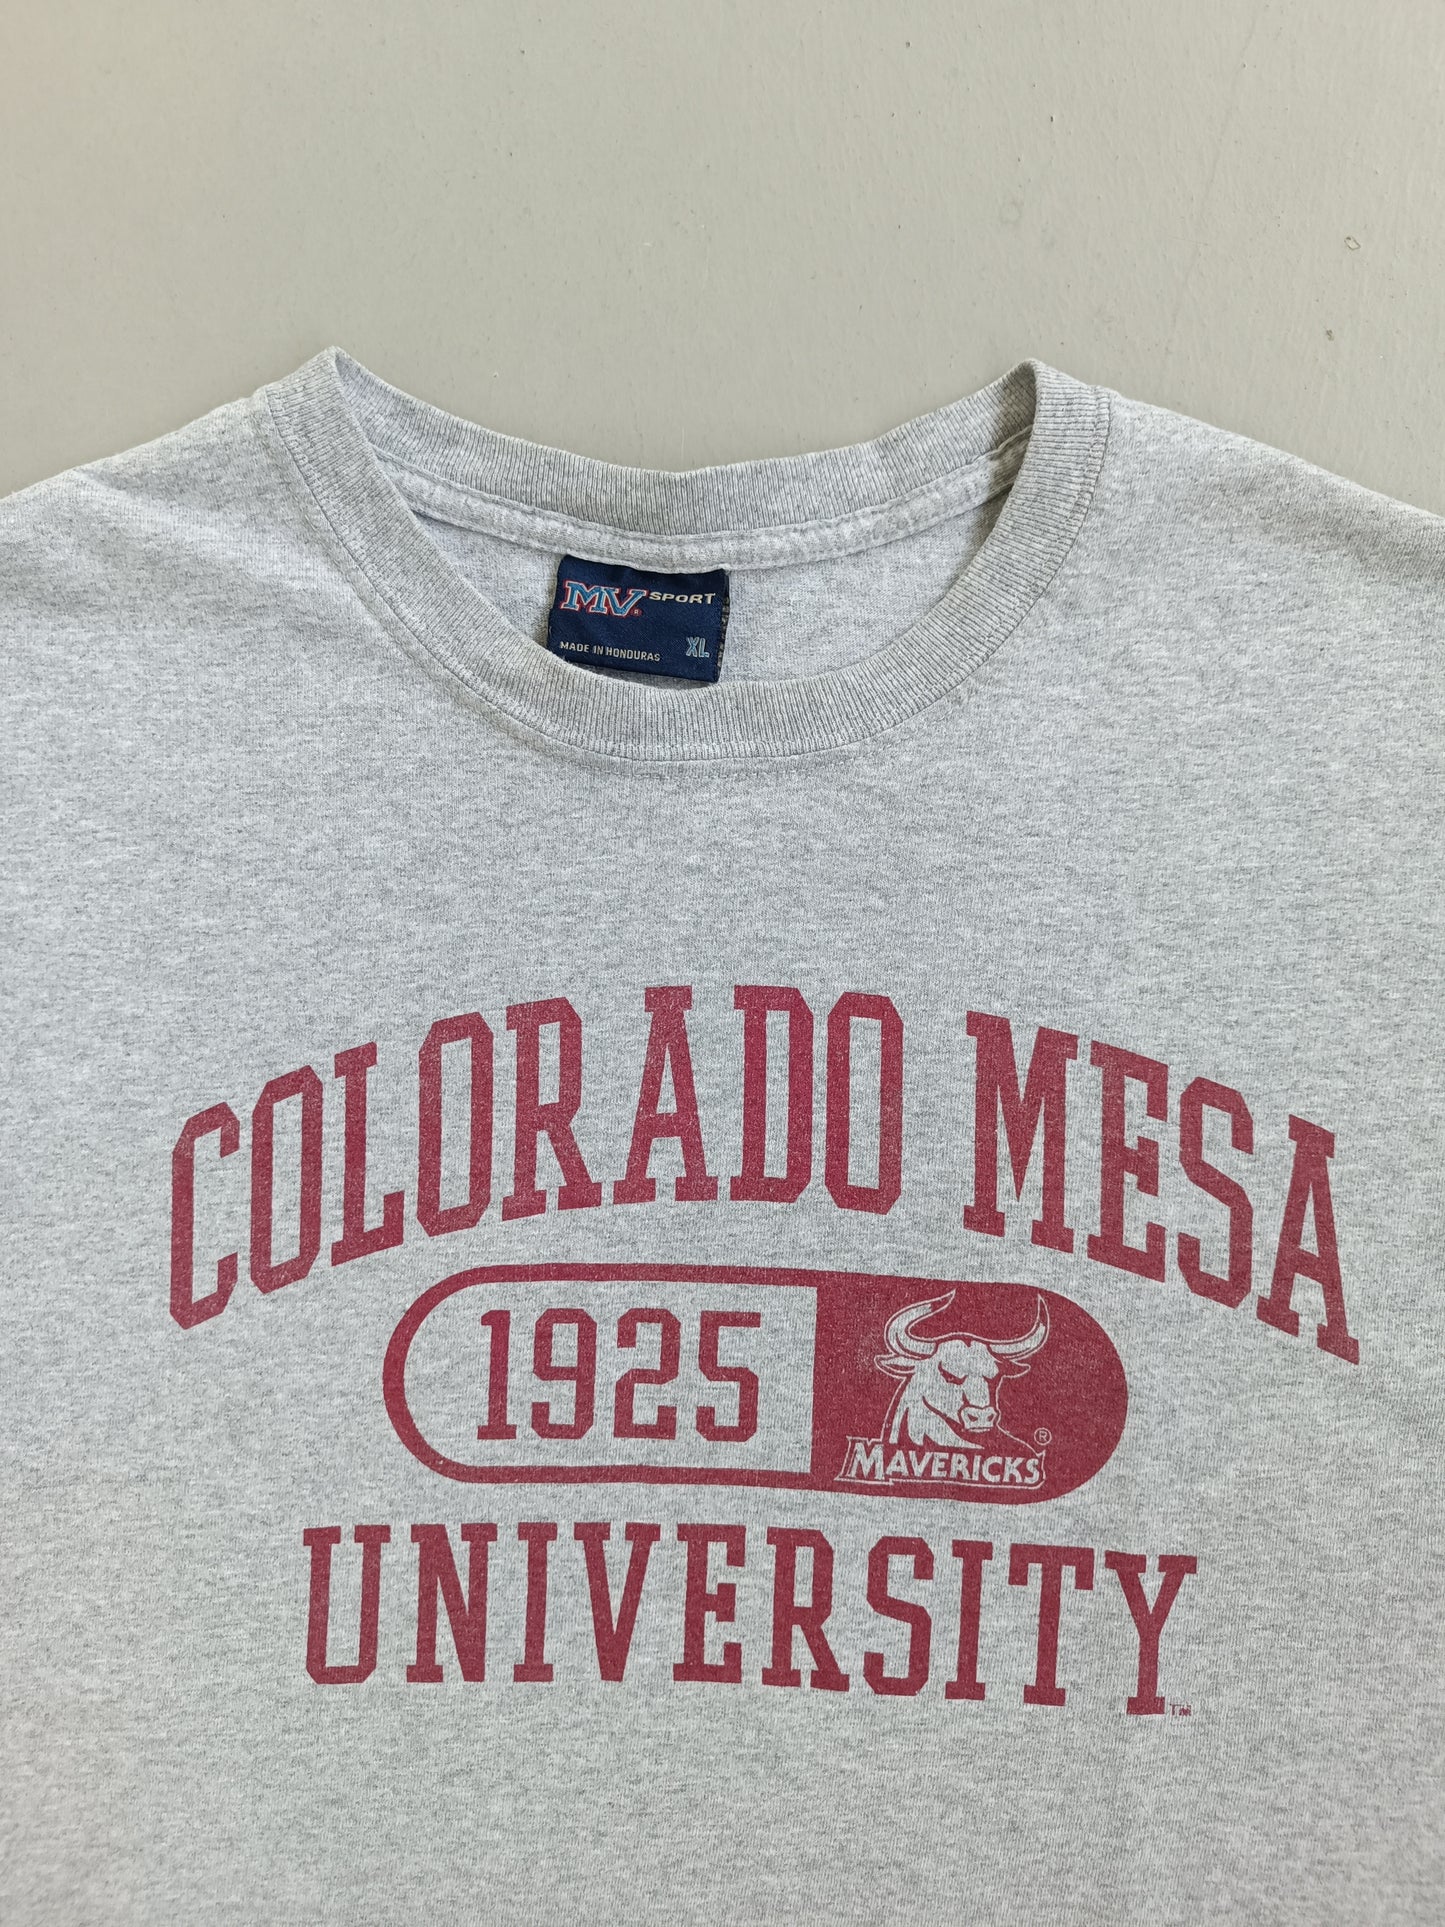 Colorado Mesa University - XL